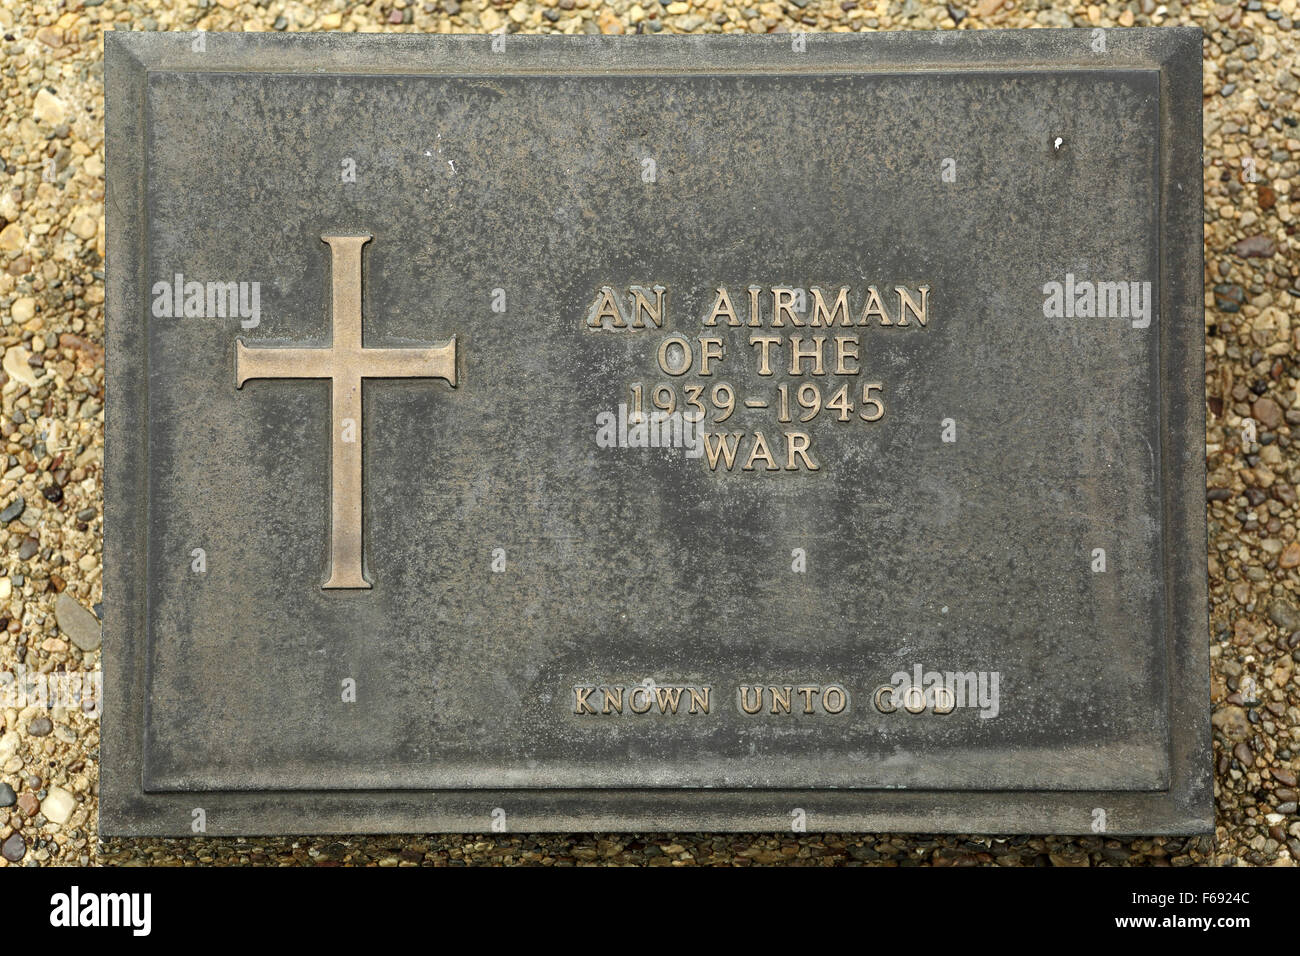 La tombe d'un aviateur inconnu au cimetière Taukkyan près de Yangon, Myanmar. Banque D'Images